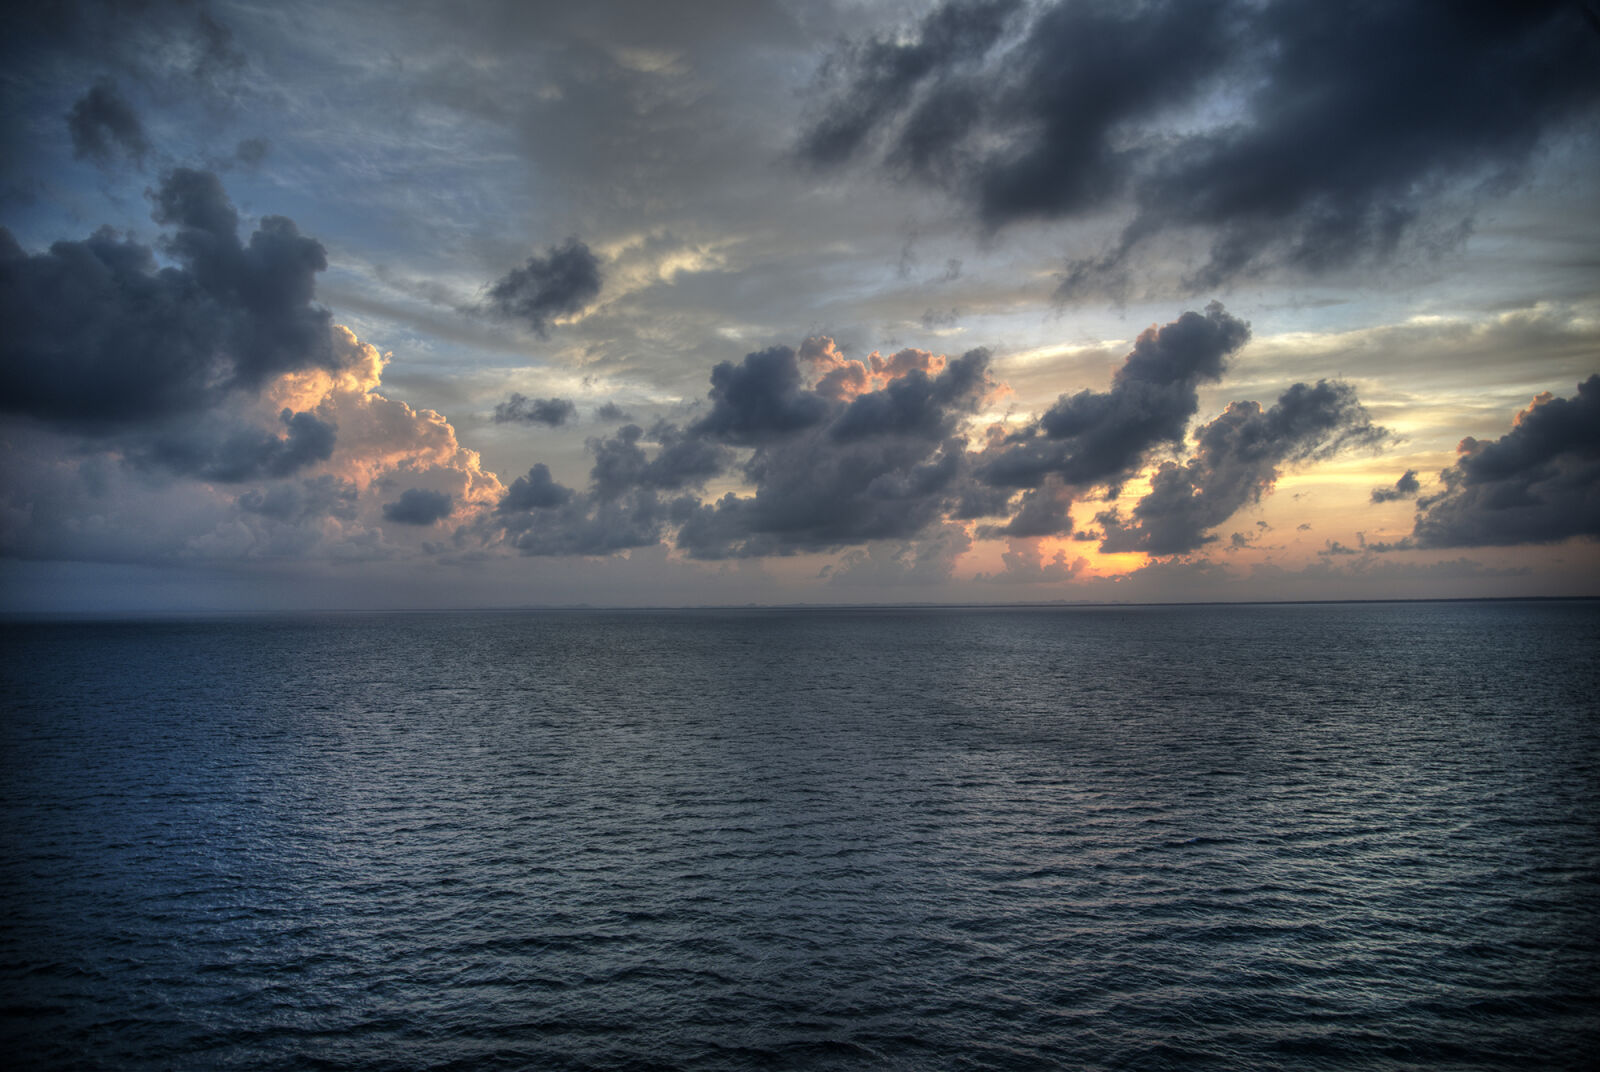 Nikon AF-S Nikkor 24-85mm F3.5-4.5G ED VR sample photo. Clouds, ocean, sunset photography